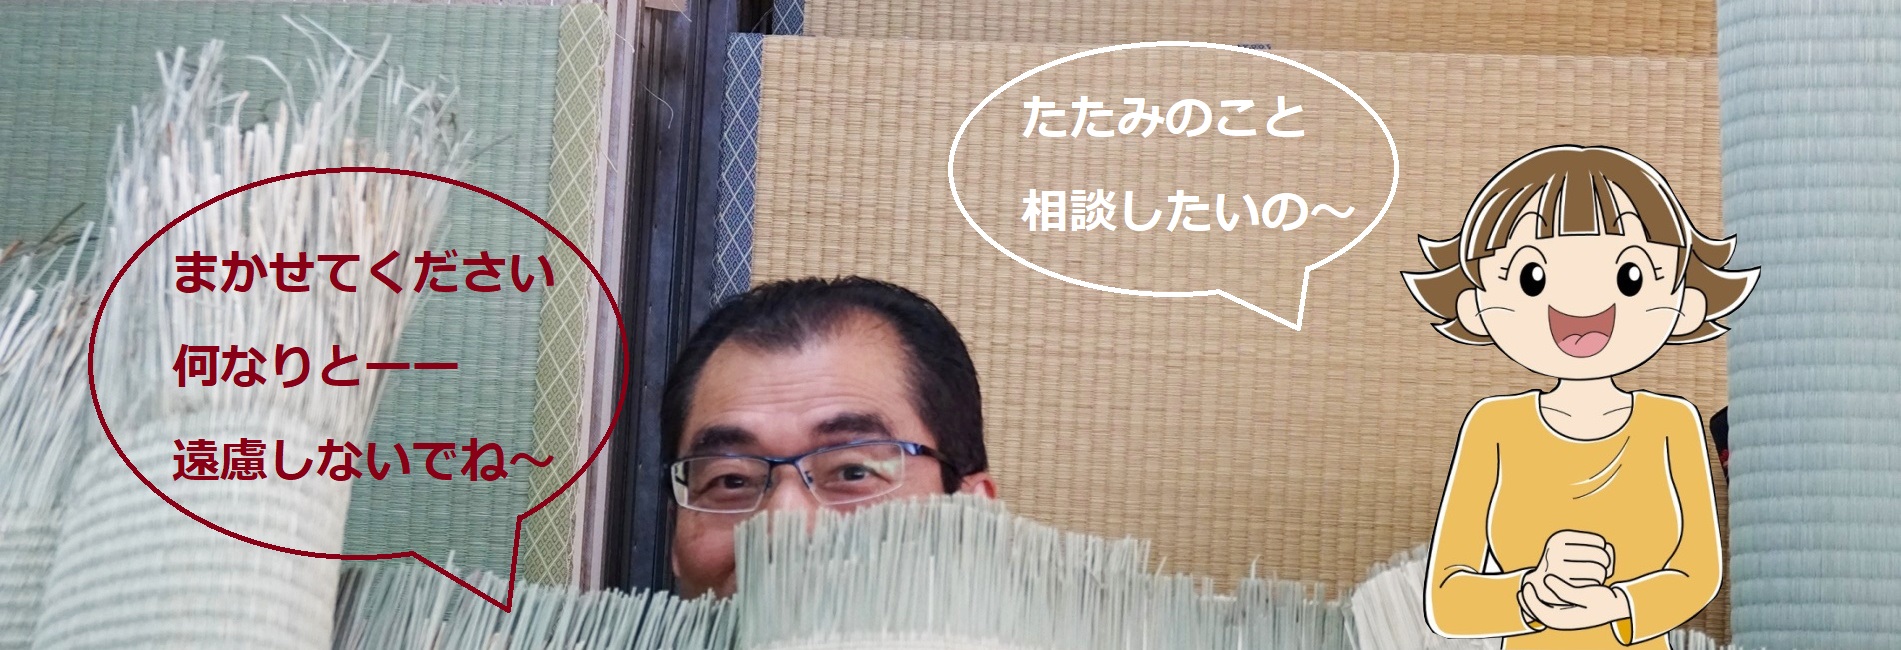 千葉県市川市の長谷川畳店はお客様からの畳替えのご相談に丁寧に対応いたします。